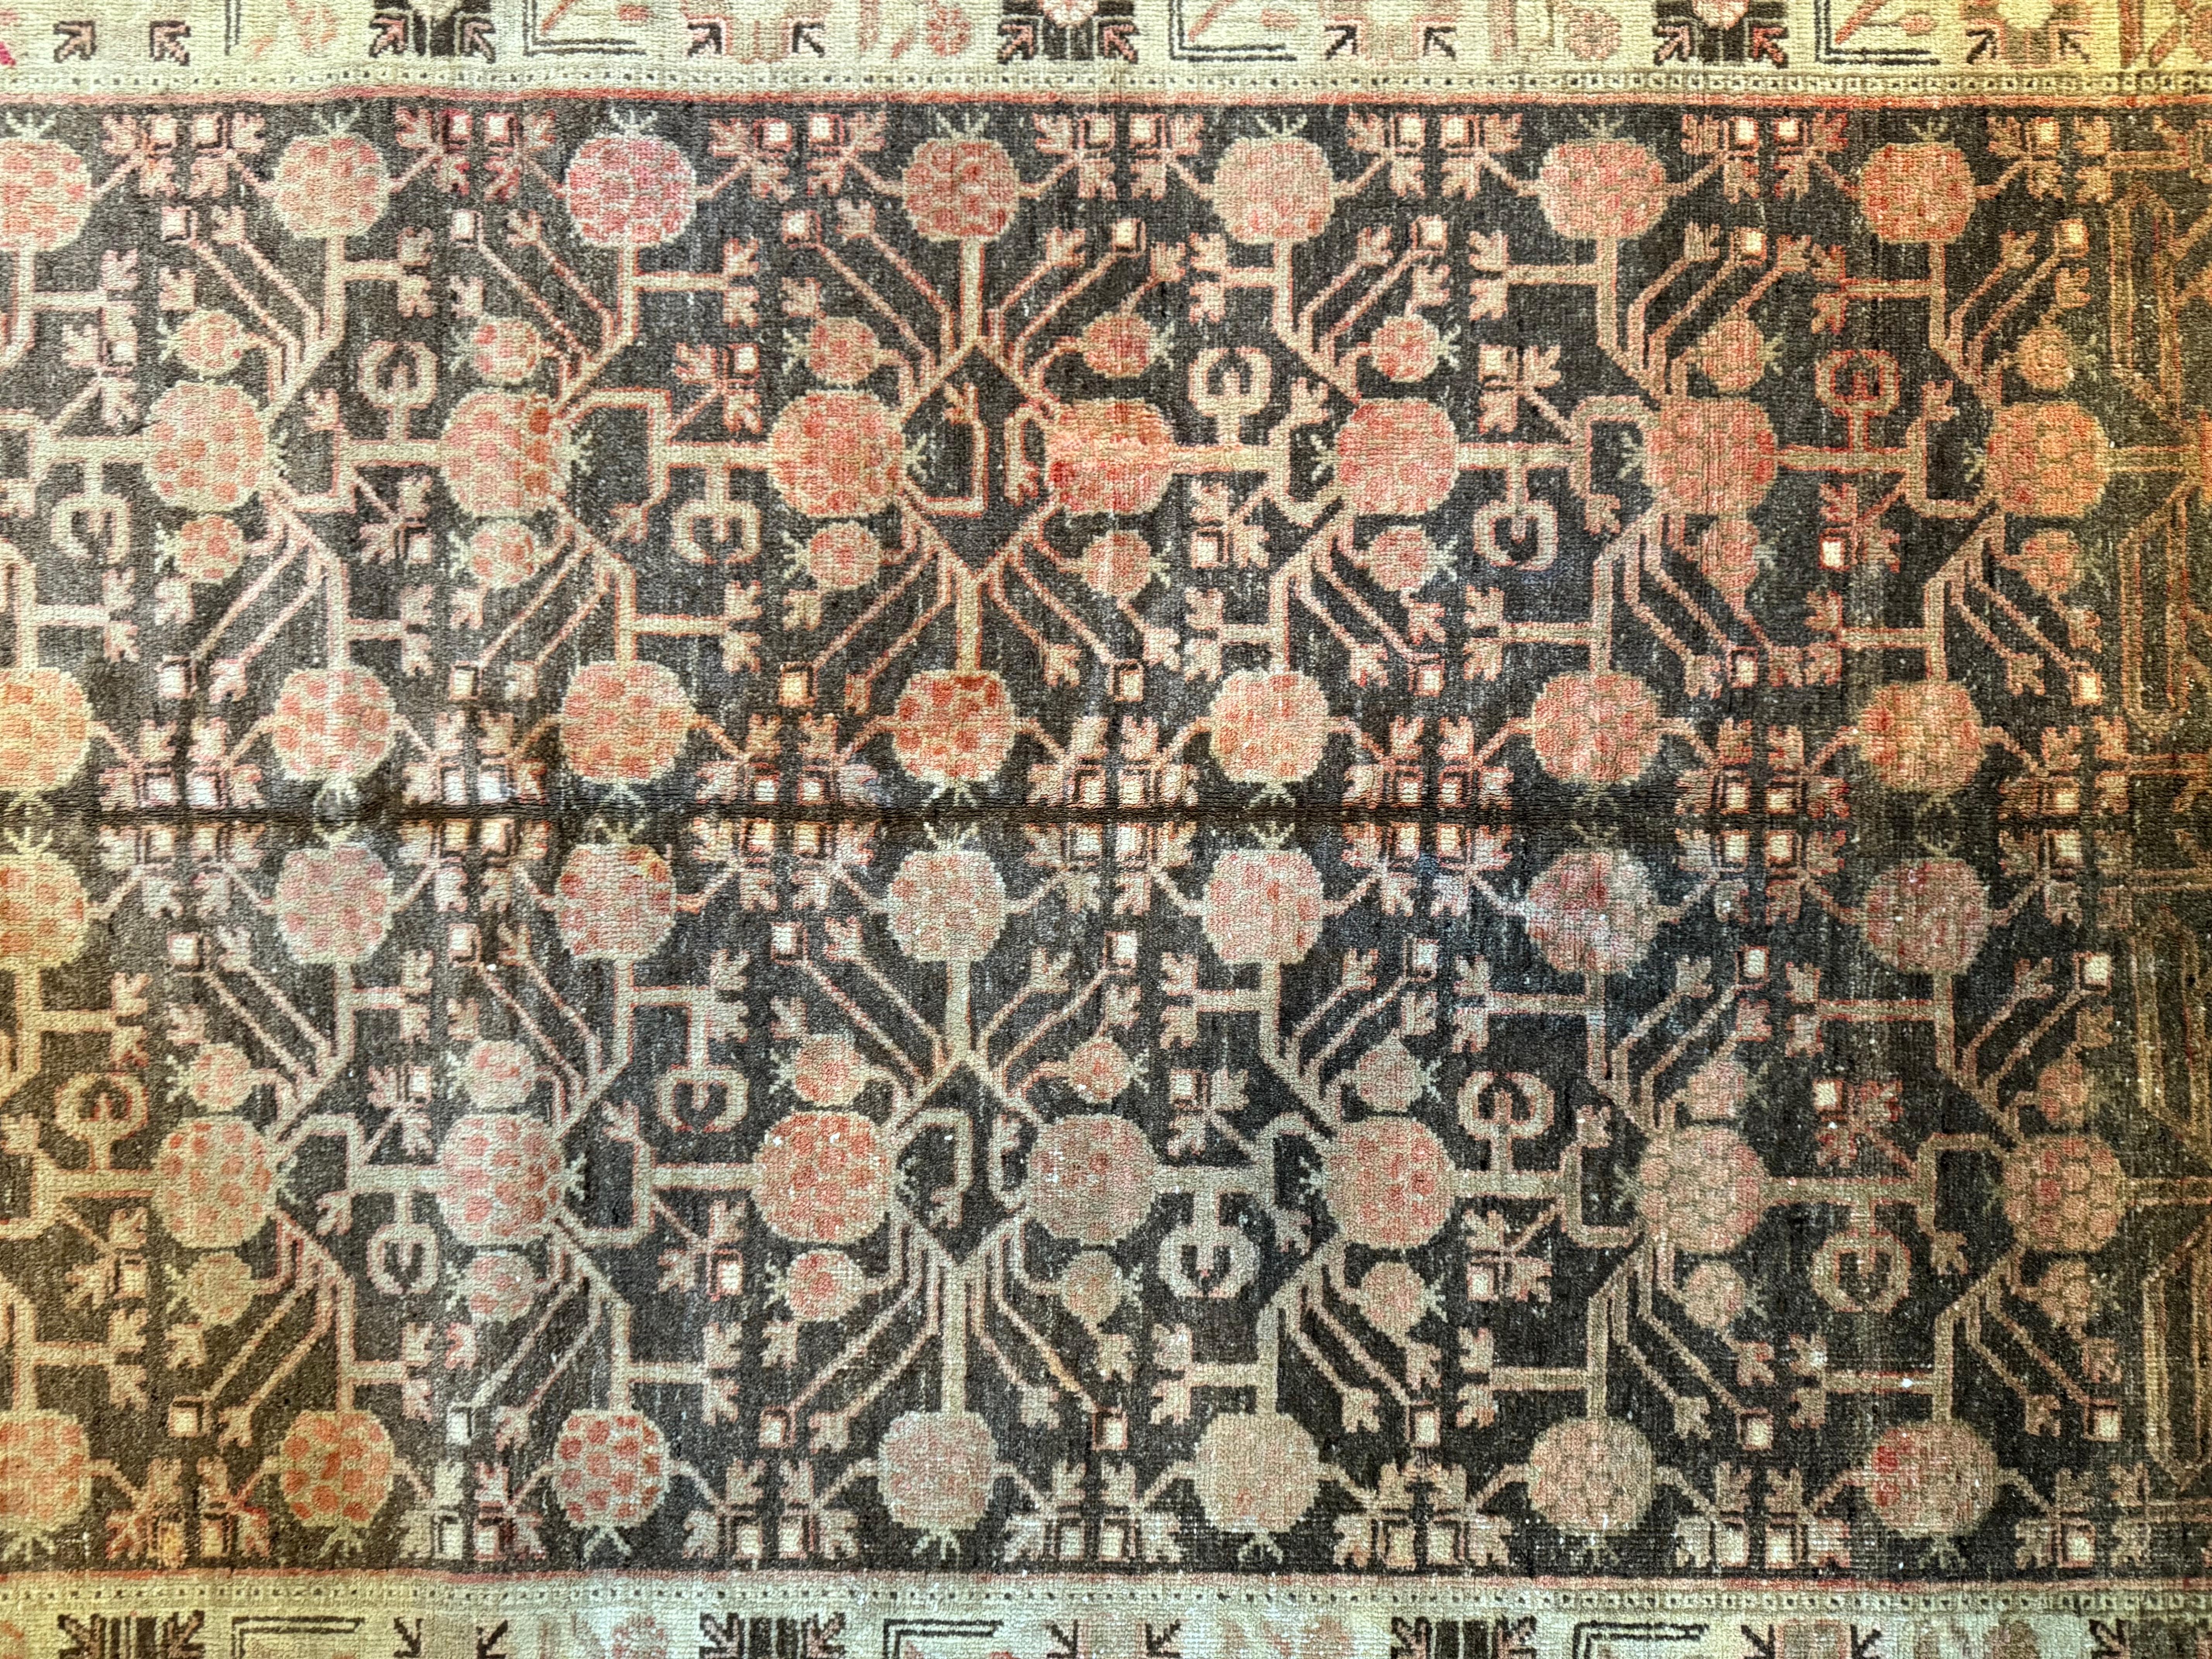 Ce tapis Samarkand ancien du XIXe siècle, de dimensions 6,6' x 4,6', témoigne d'une élégance intemporelle. Ses motifs complexes et ses tons chauds ajoutent une touche de charme vintage à toute maison américaine, fusionnant allure classique et